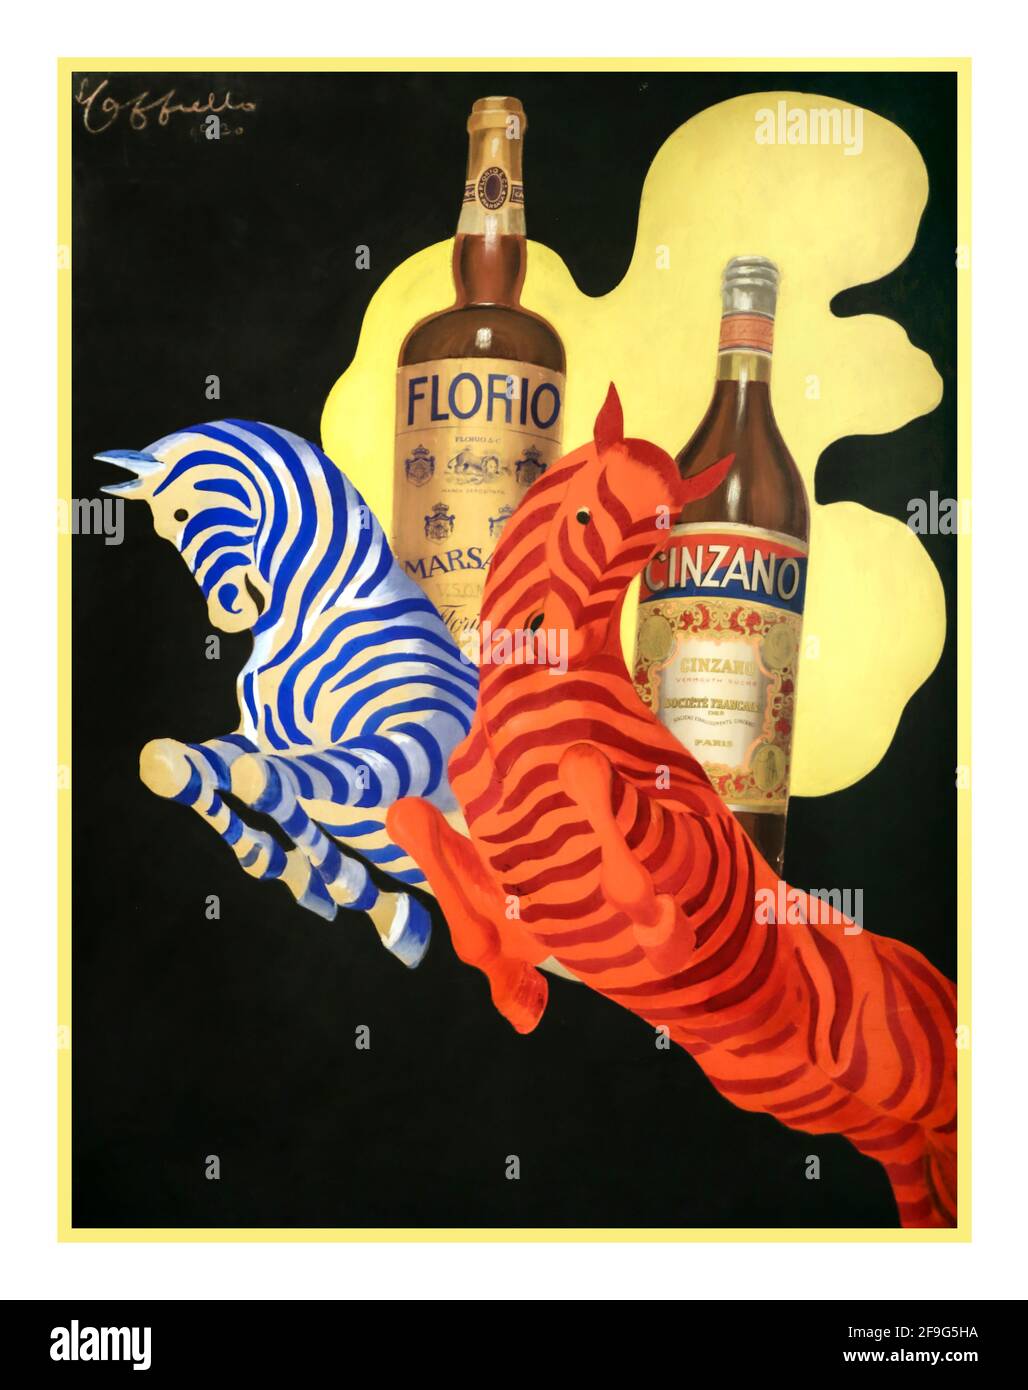 CINZANO FLORIO Vintage affiche de Leonetto sur les boissons italiennes pour apéritif des années 1930 Cappiello de bouteille Florio et bouteille Cinzano 1930 Italie Banque D'Images